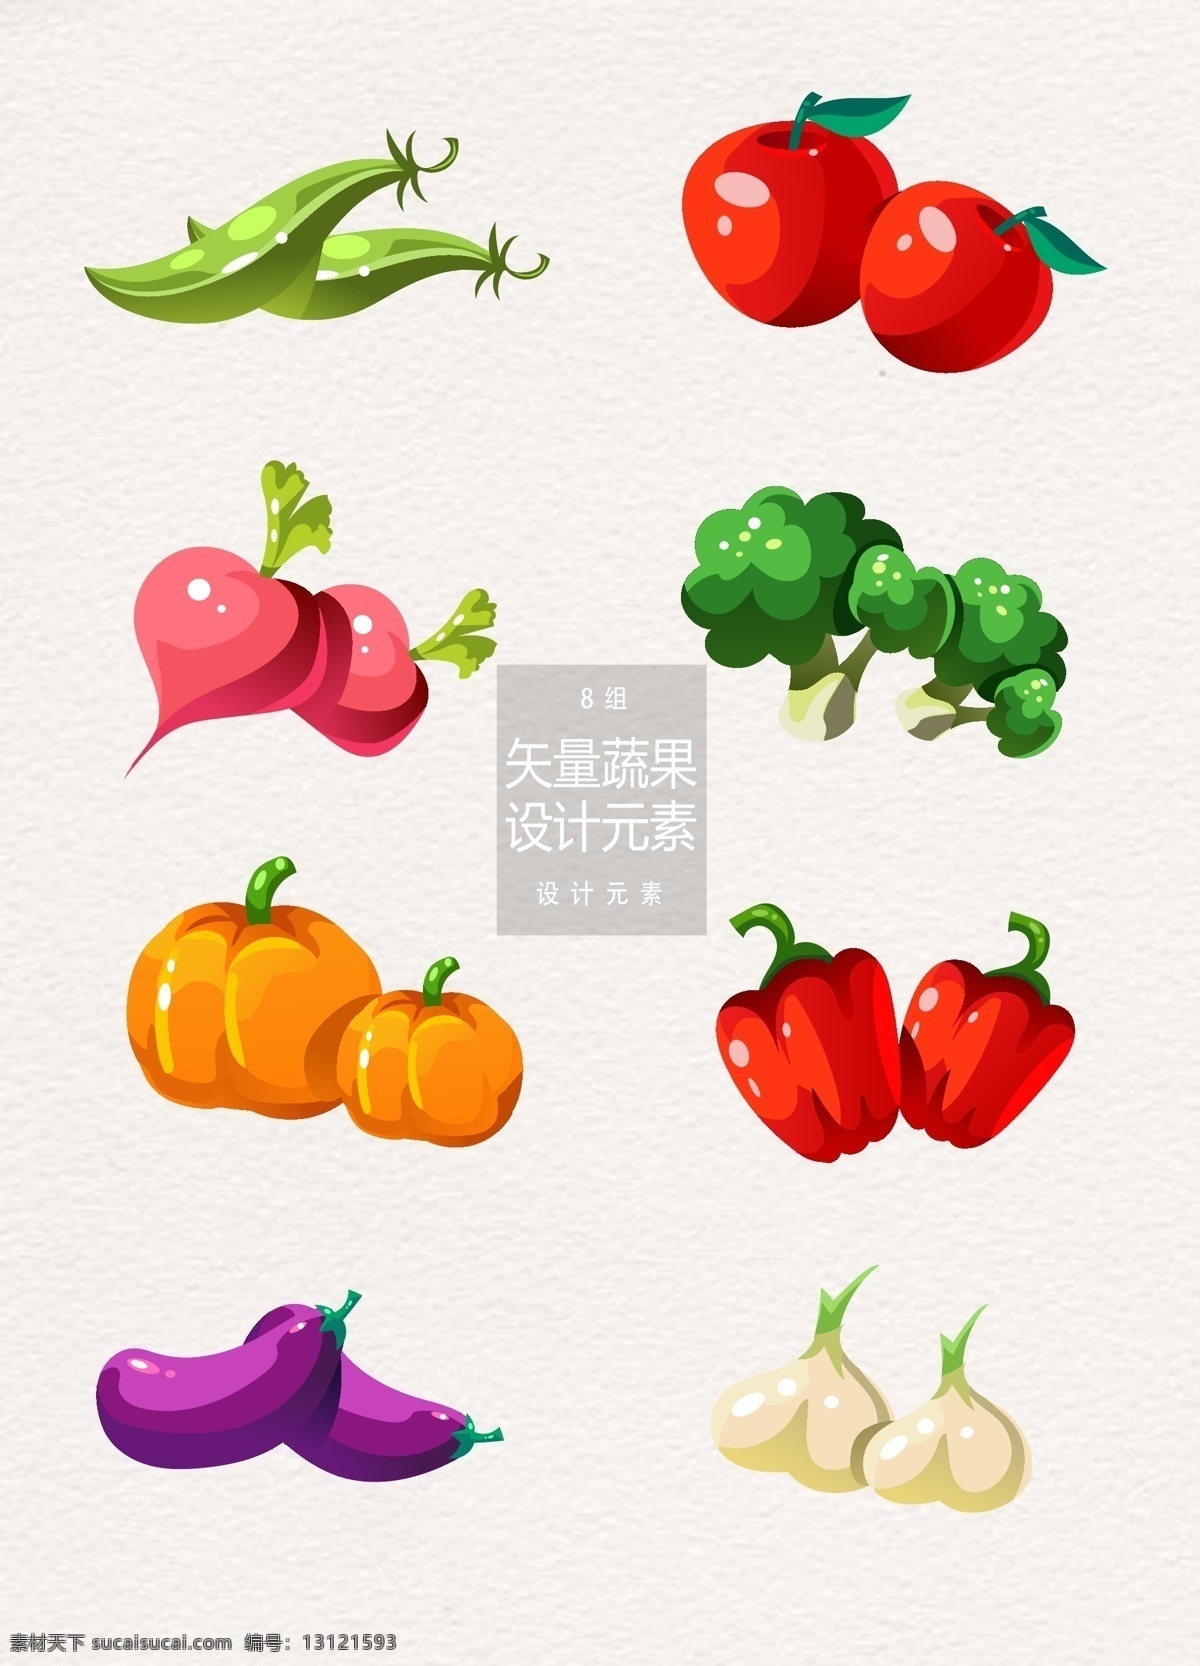 农作物 蔬果 食 材 元素 设计元素 蔬菜 南瓜 苹果 辣椒 青豆 萝卜 菜花 茄子